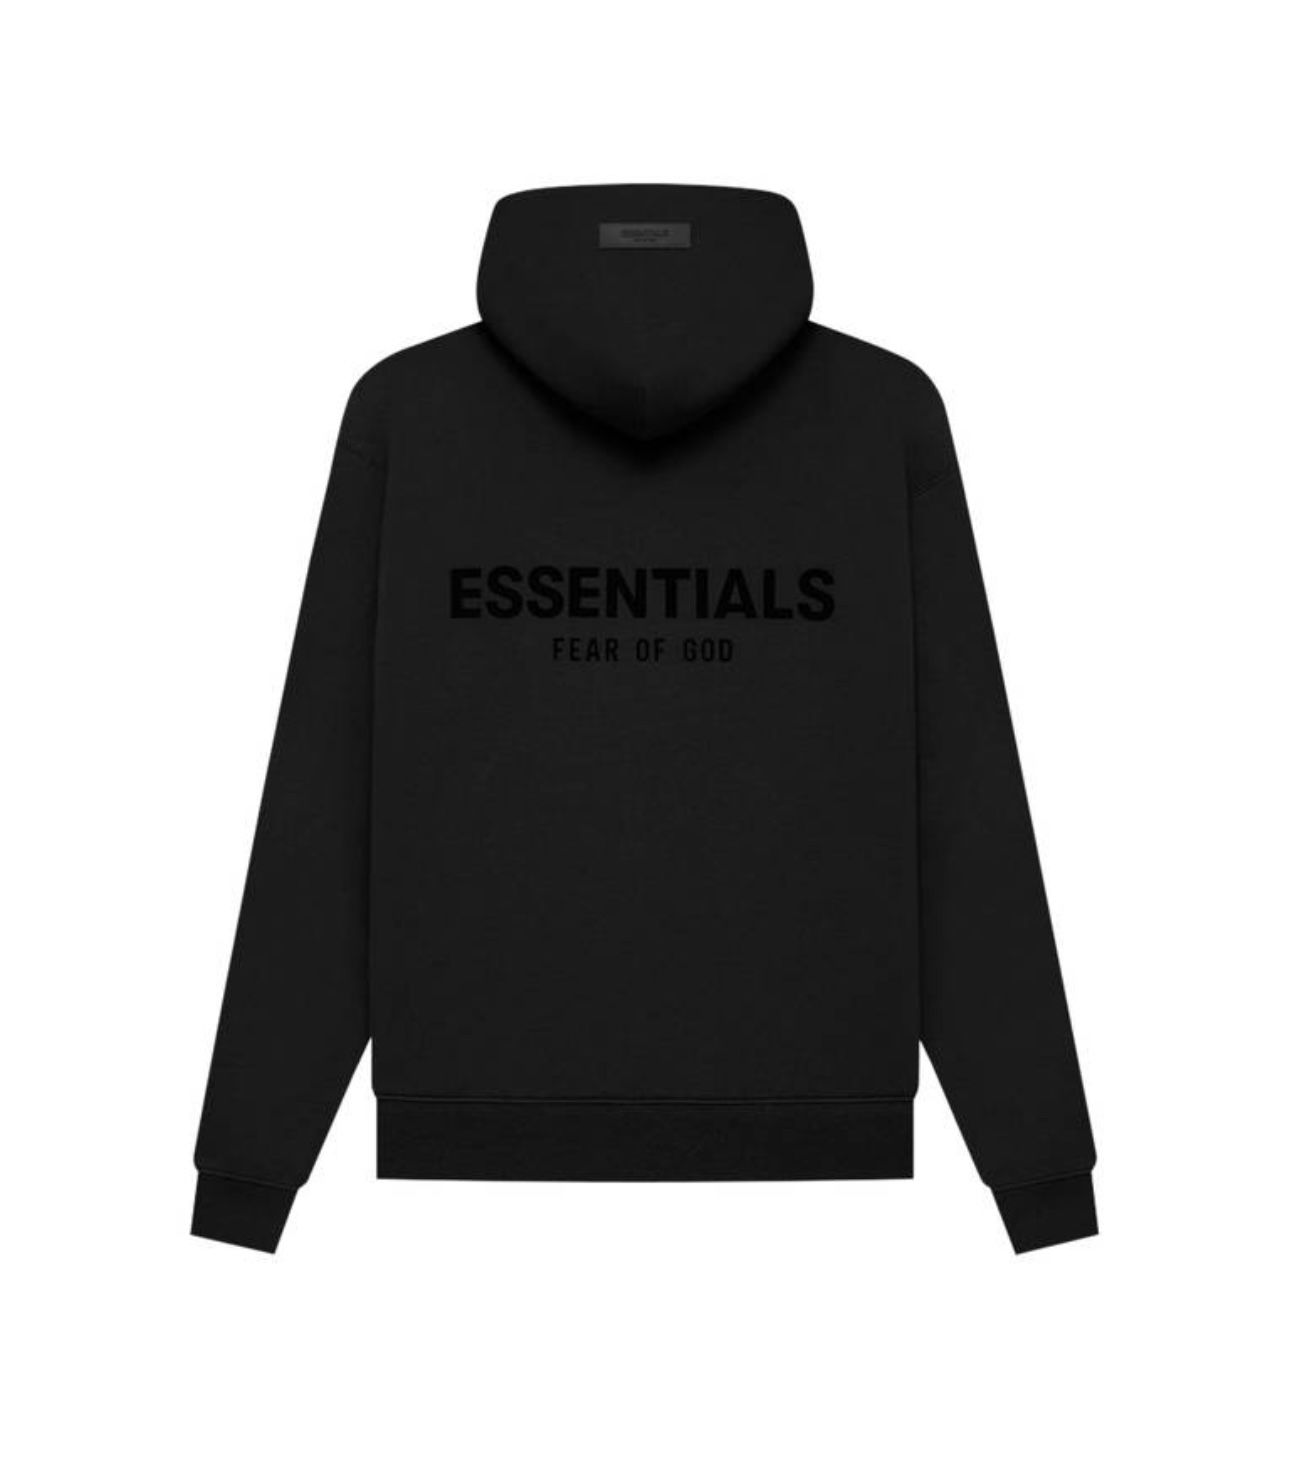 Essential hoodies 